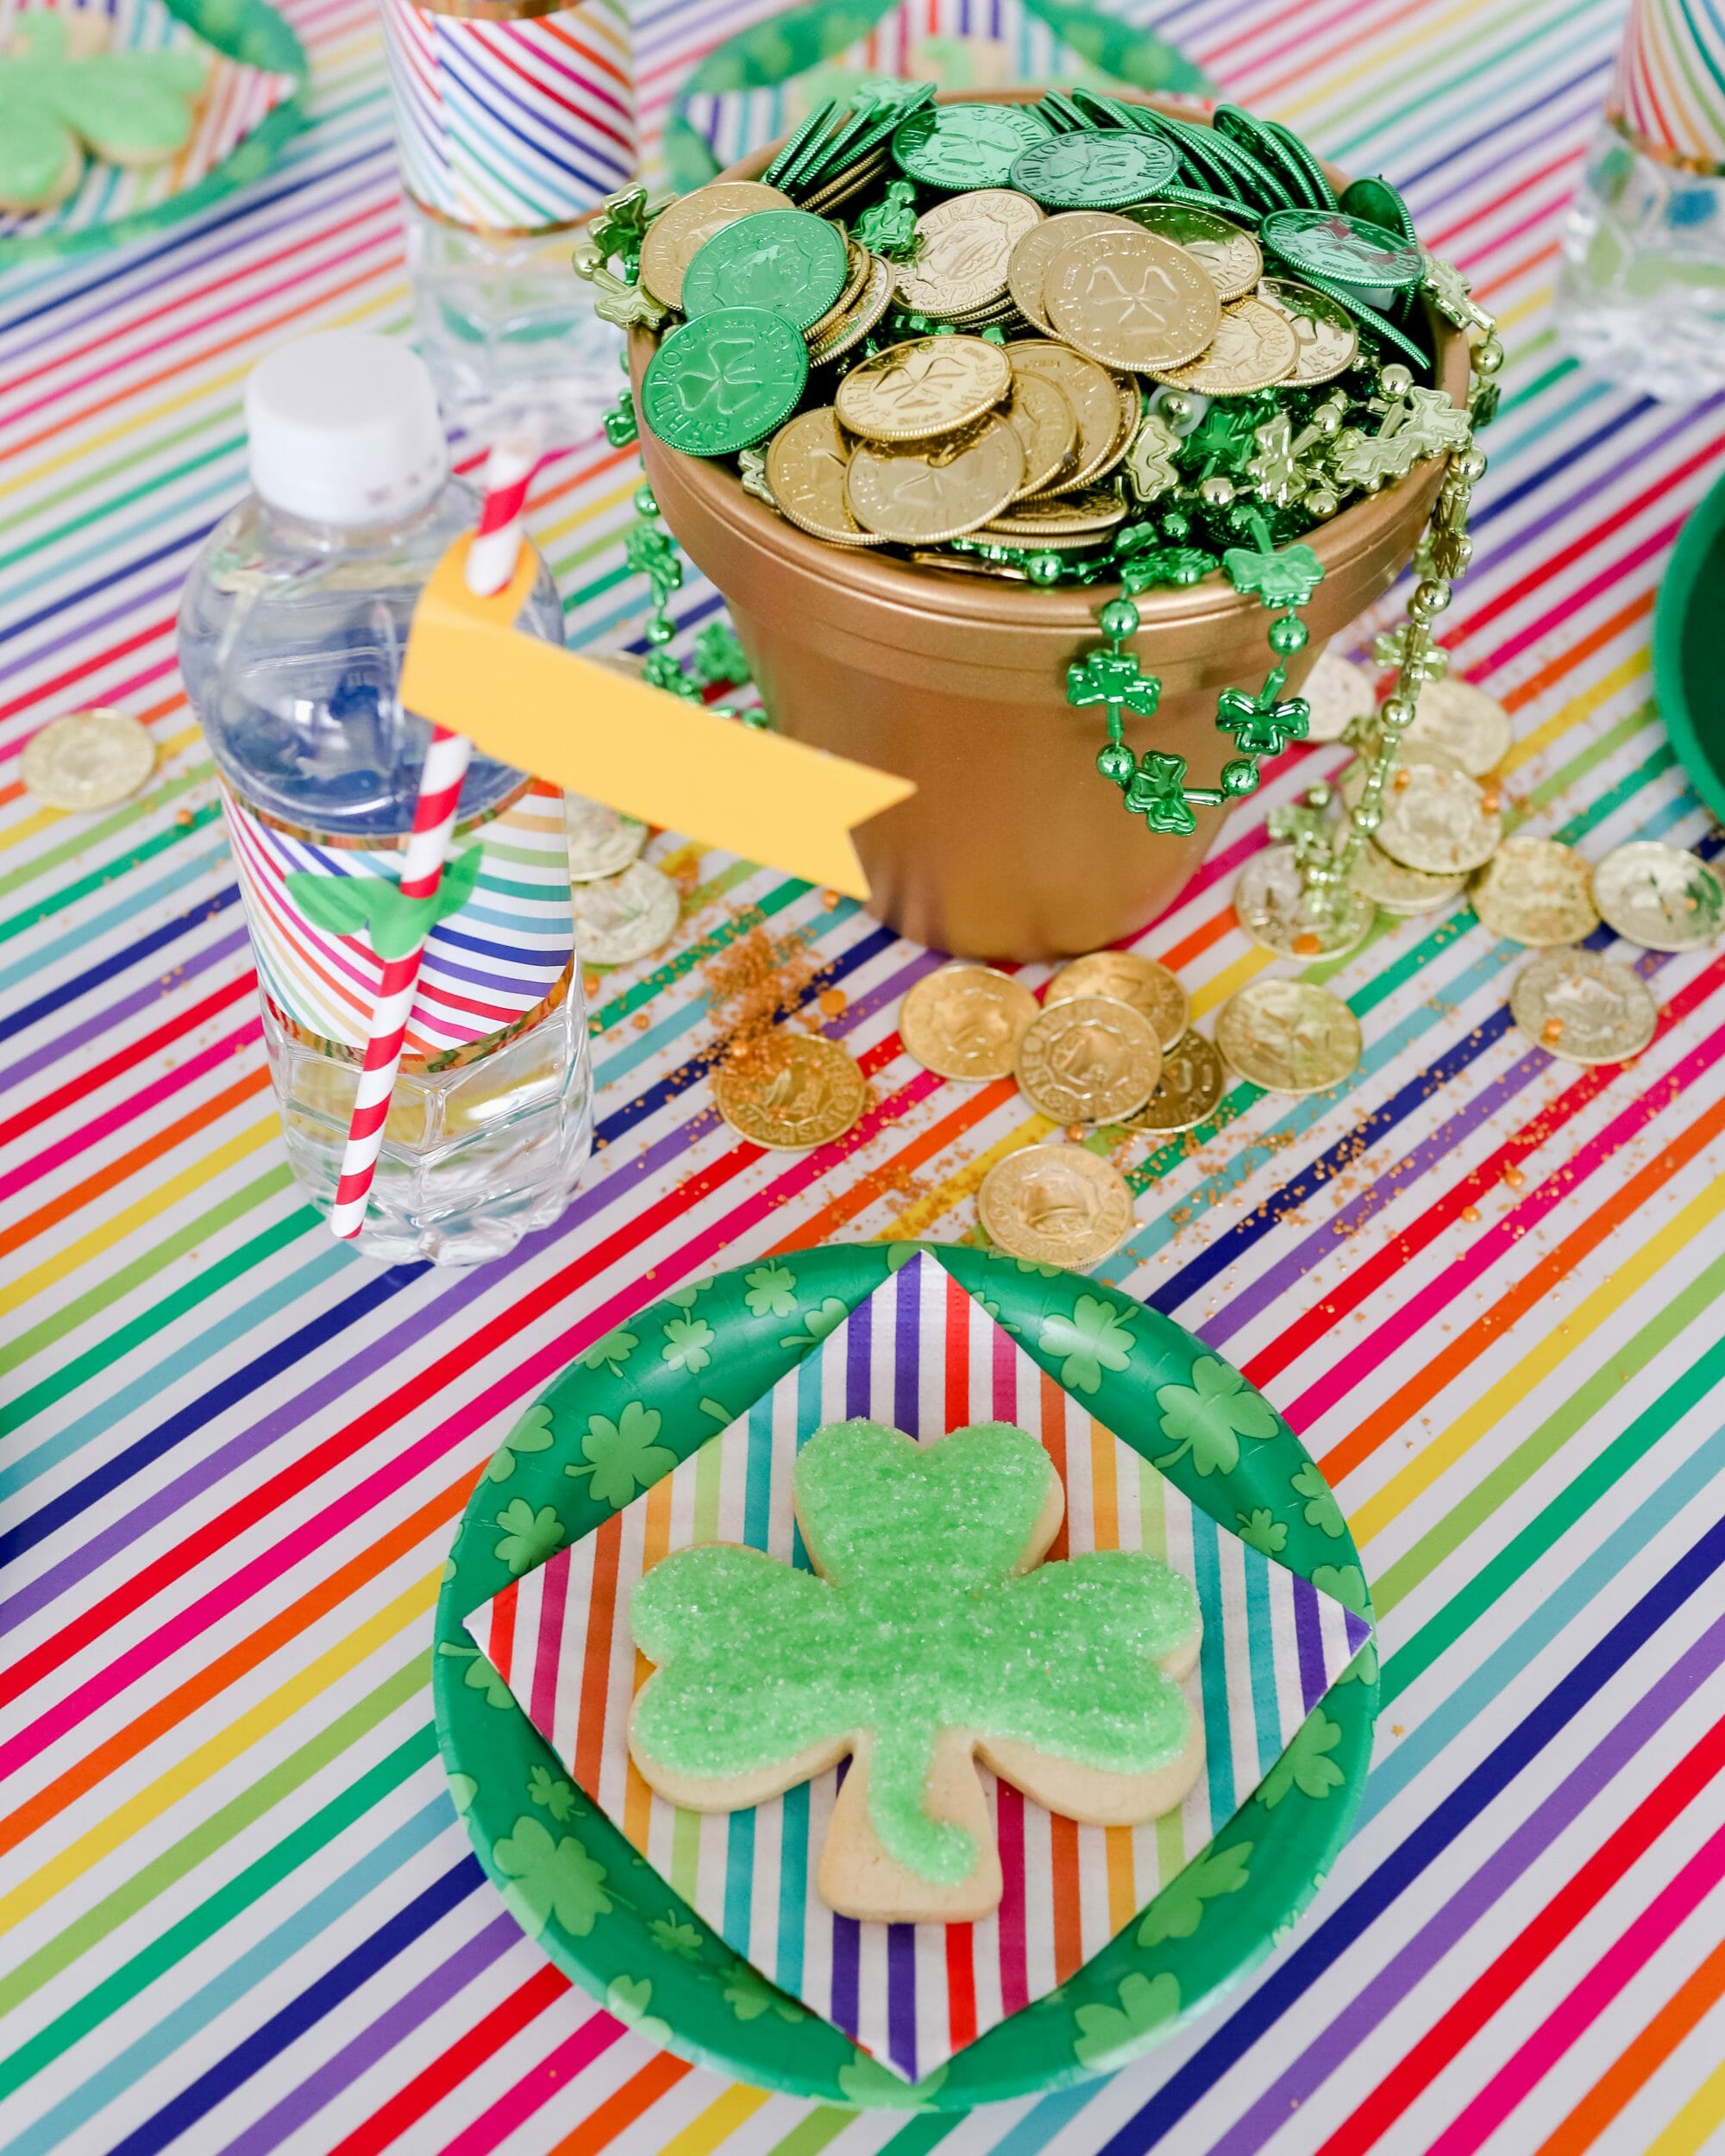 Easy St Patrick’s Day Ideas for Kids | st. Patrick's day crafts | st. Patrick's day fun | fun ideas for st. Patrick's day || JennyCookies.com #stpatricksdayfun #kidscrafts #stpaddysday